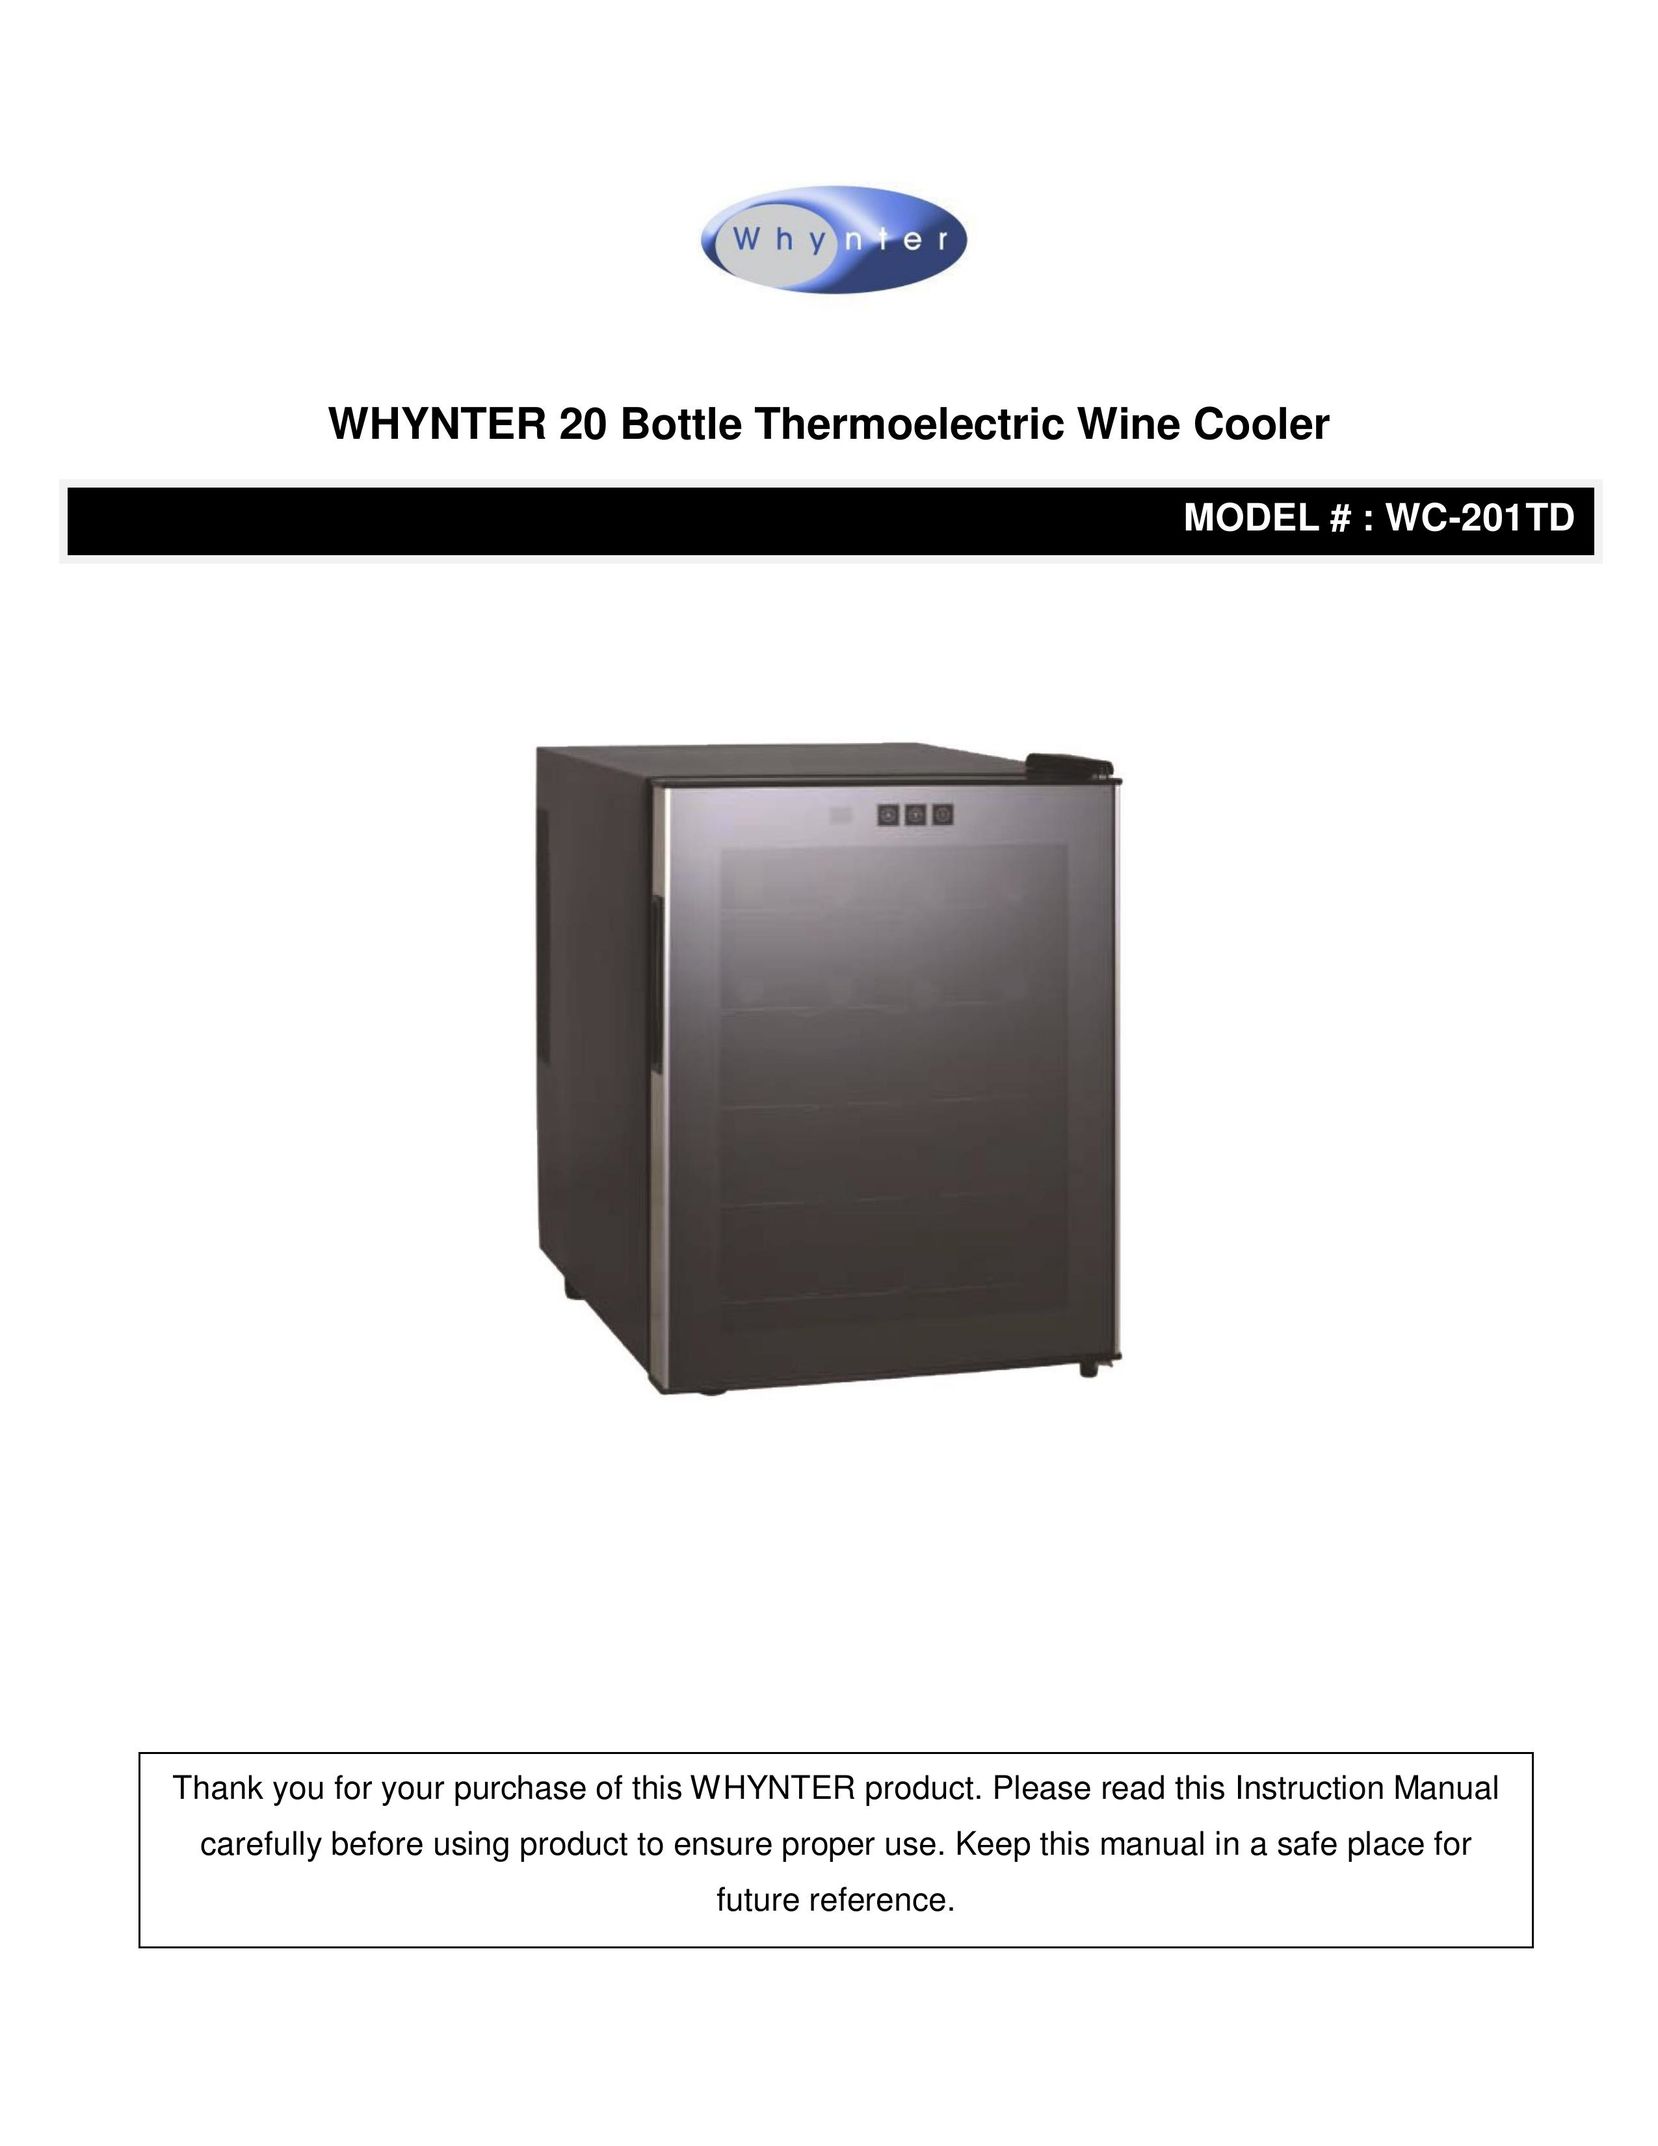 Whynter wc-201td Beverage Dispenser User Manual